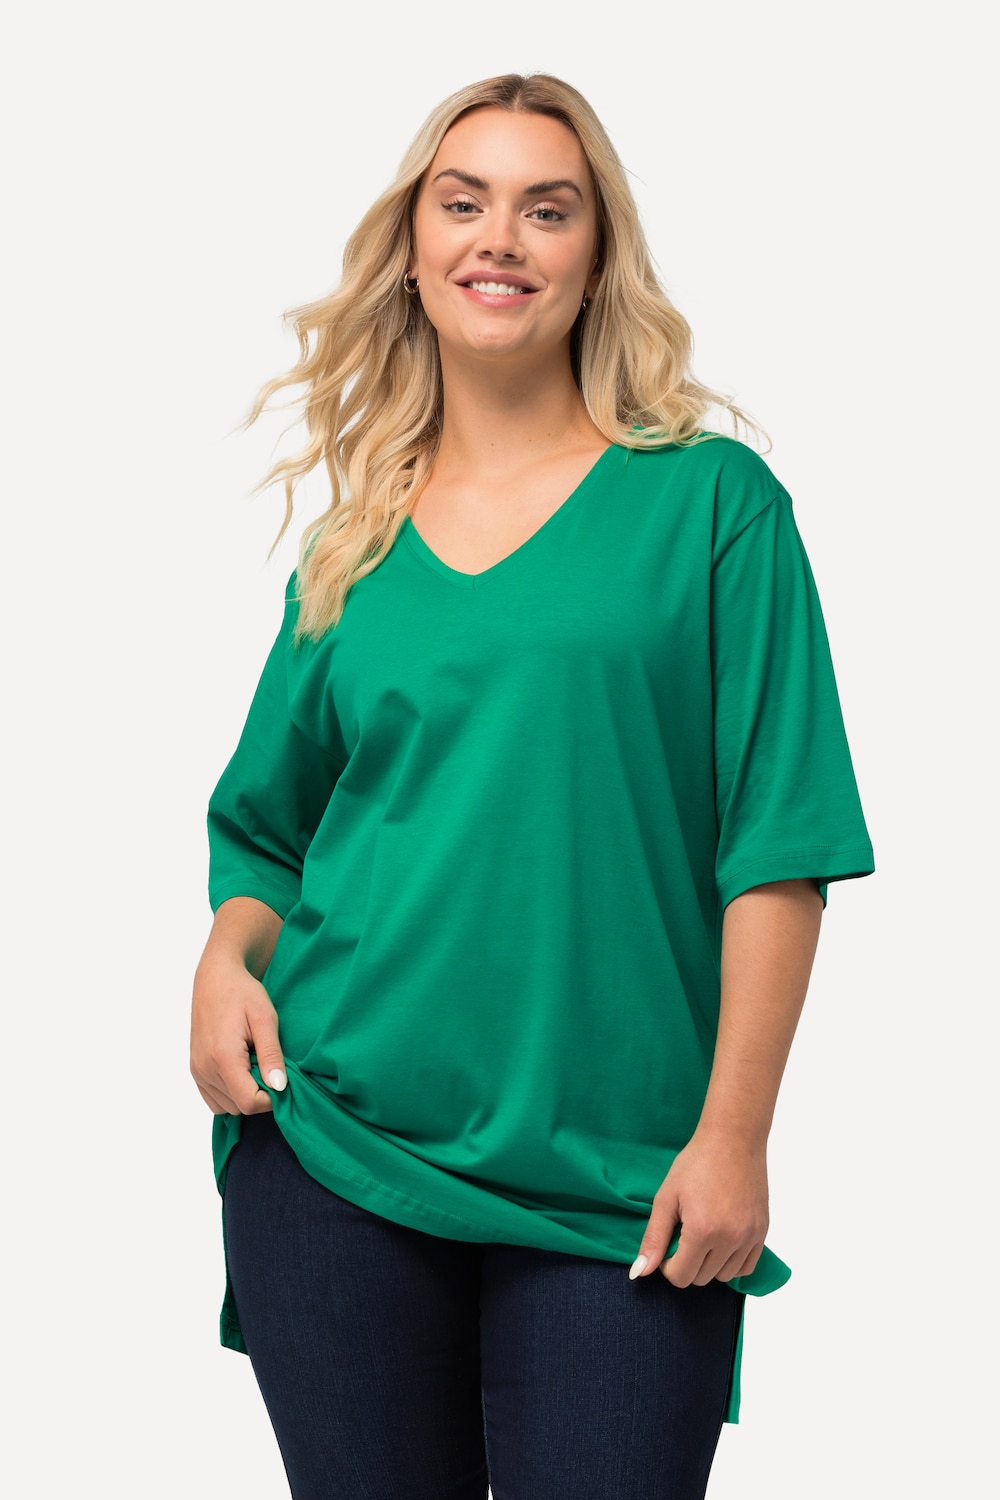 Grote Maten T-Shirt, Dames, groen, Maat: 66/68, Katoen/Viscose, Ulla Popken